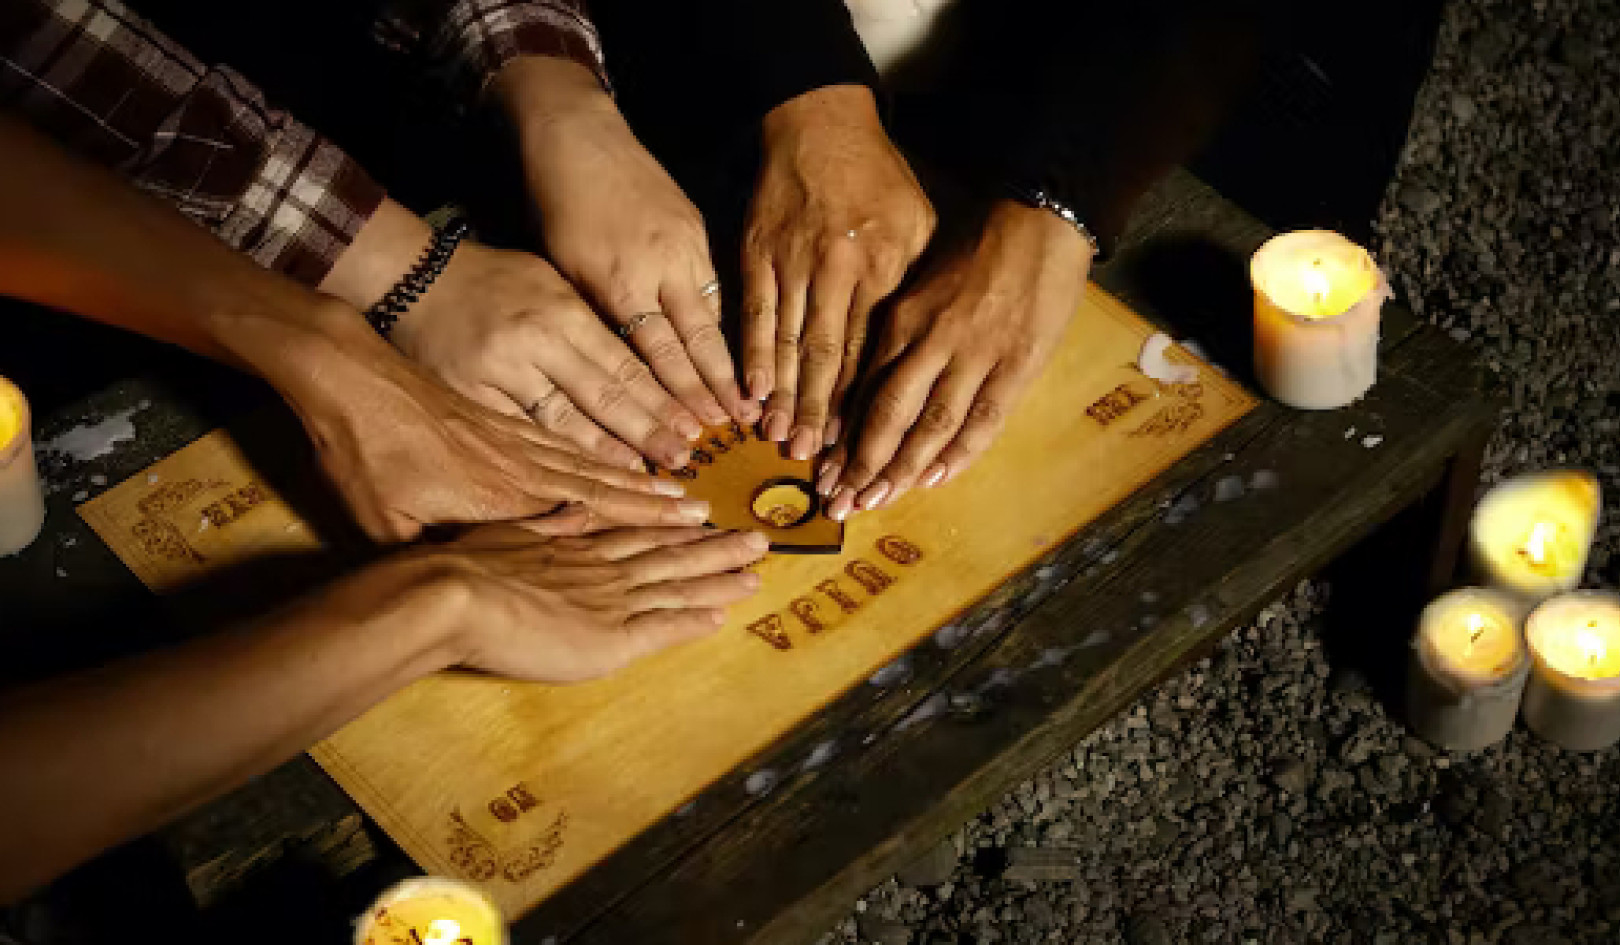 Tre faktorer som kan forklare hvorfor Ouija-brett ser ut til å fungere